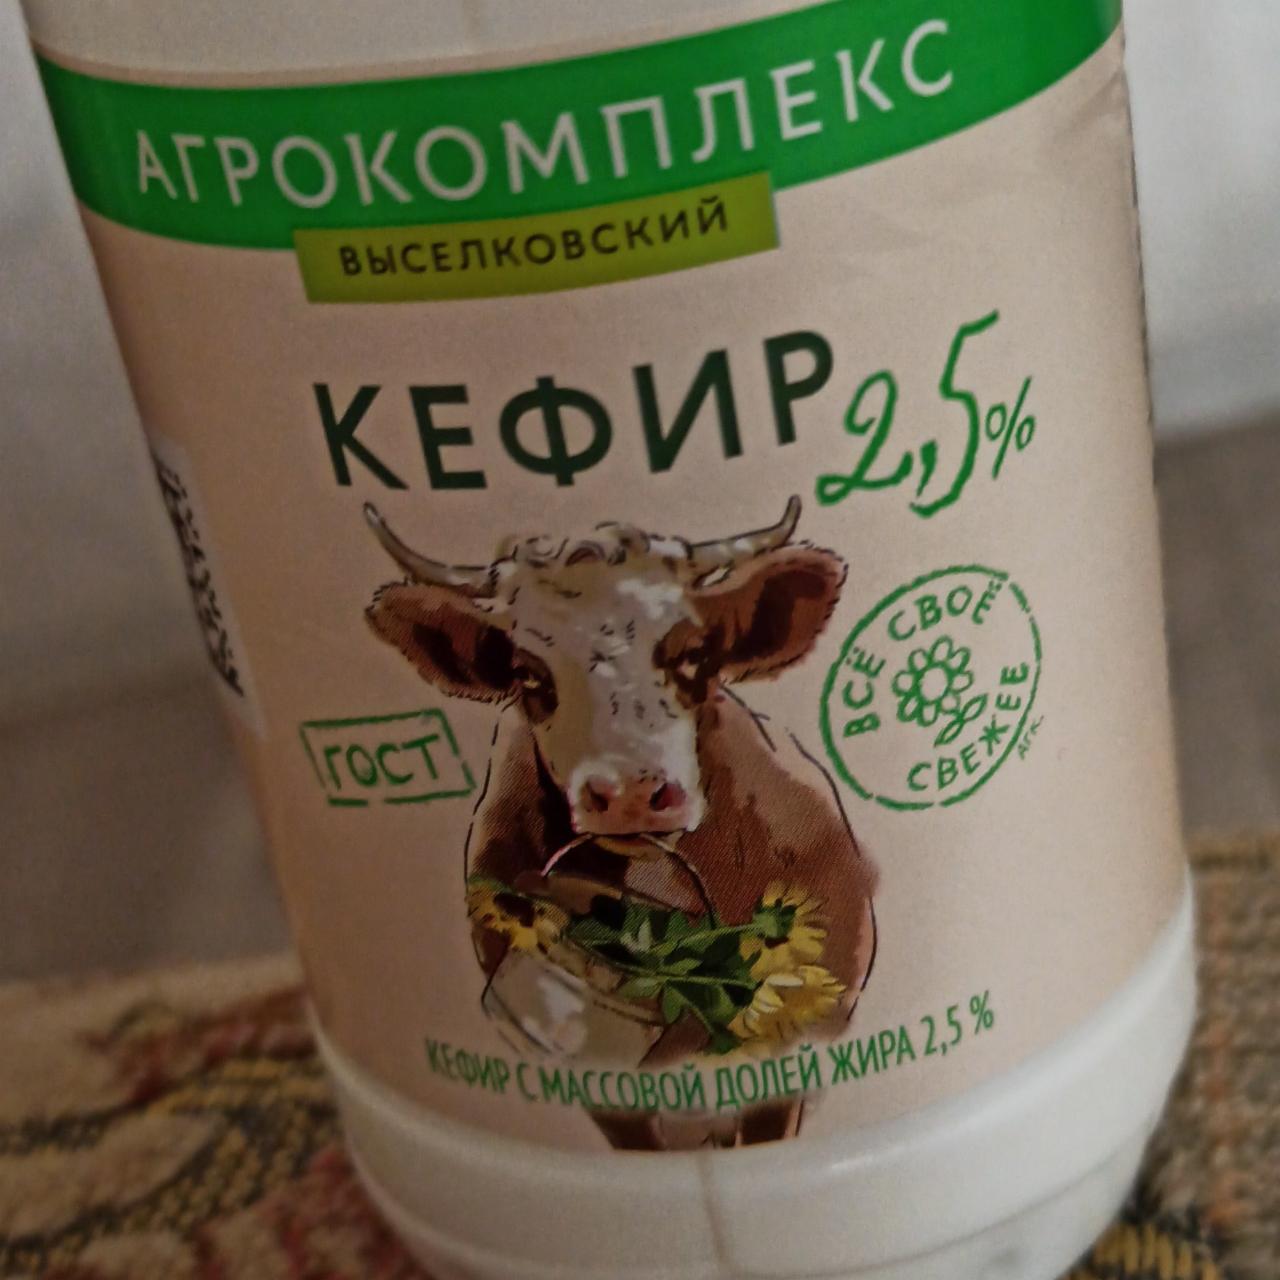 Фото - Кефир 2.5% Агрокомплекс выселковский